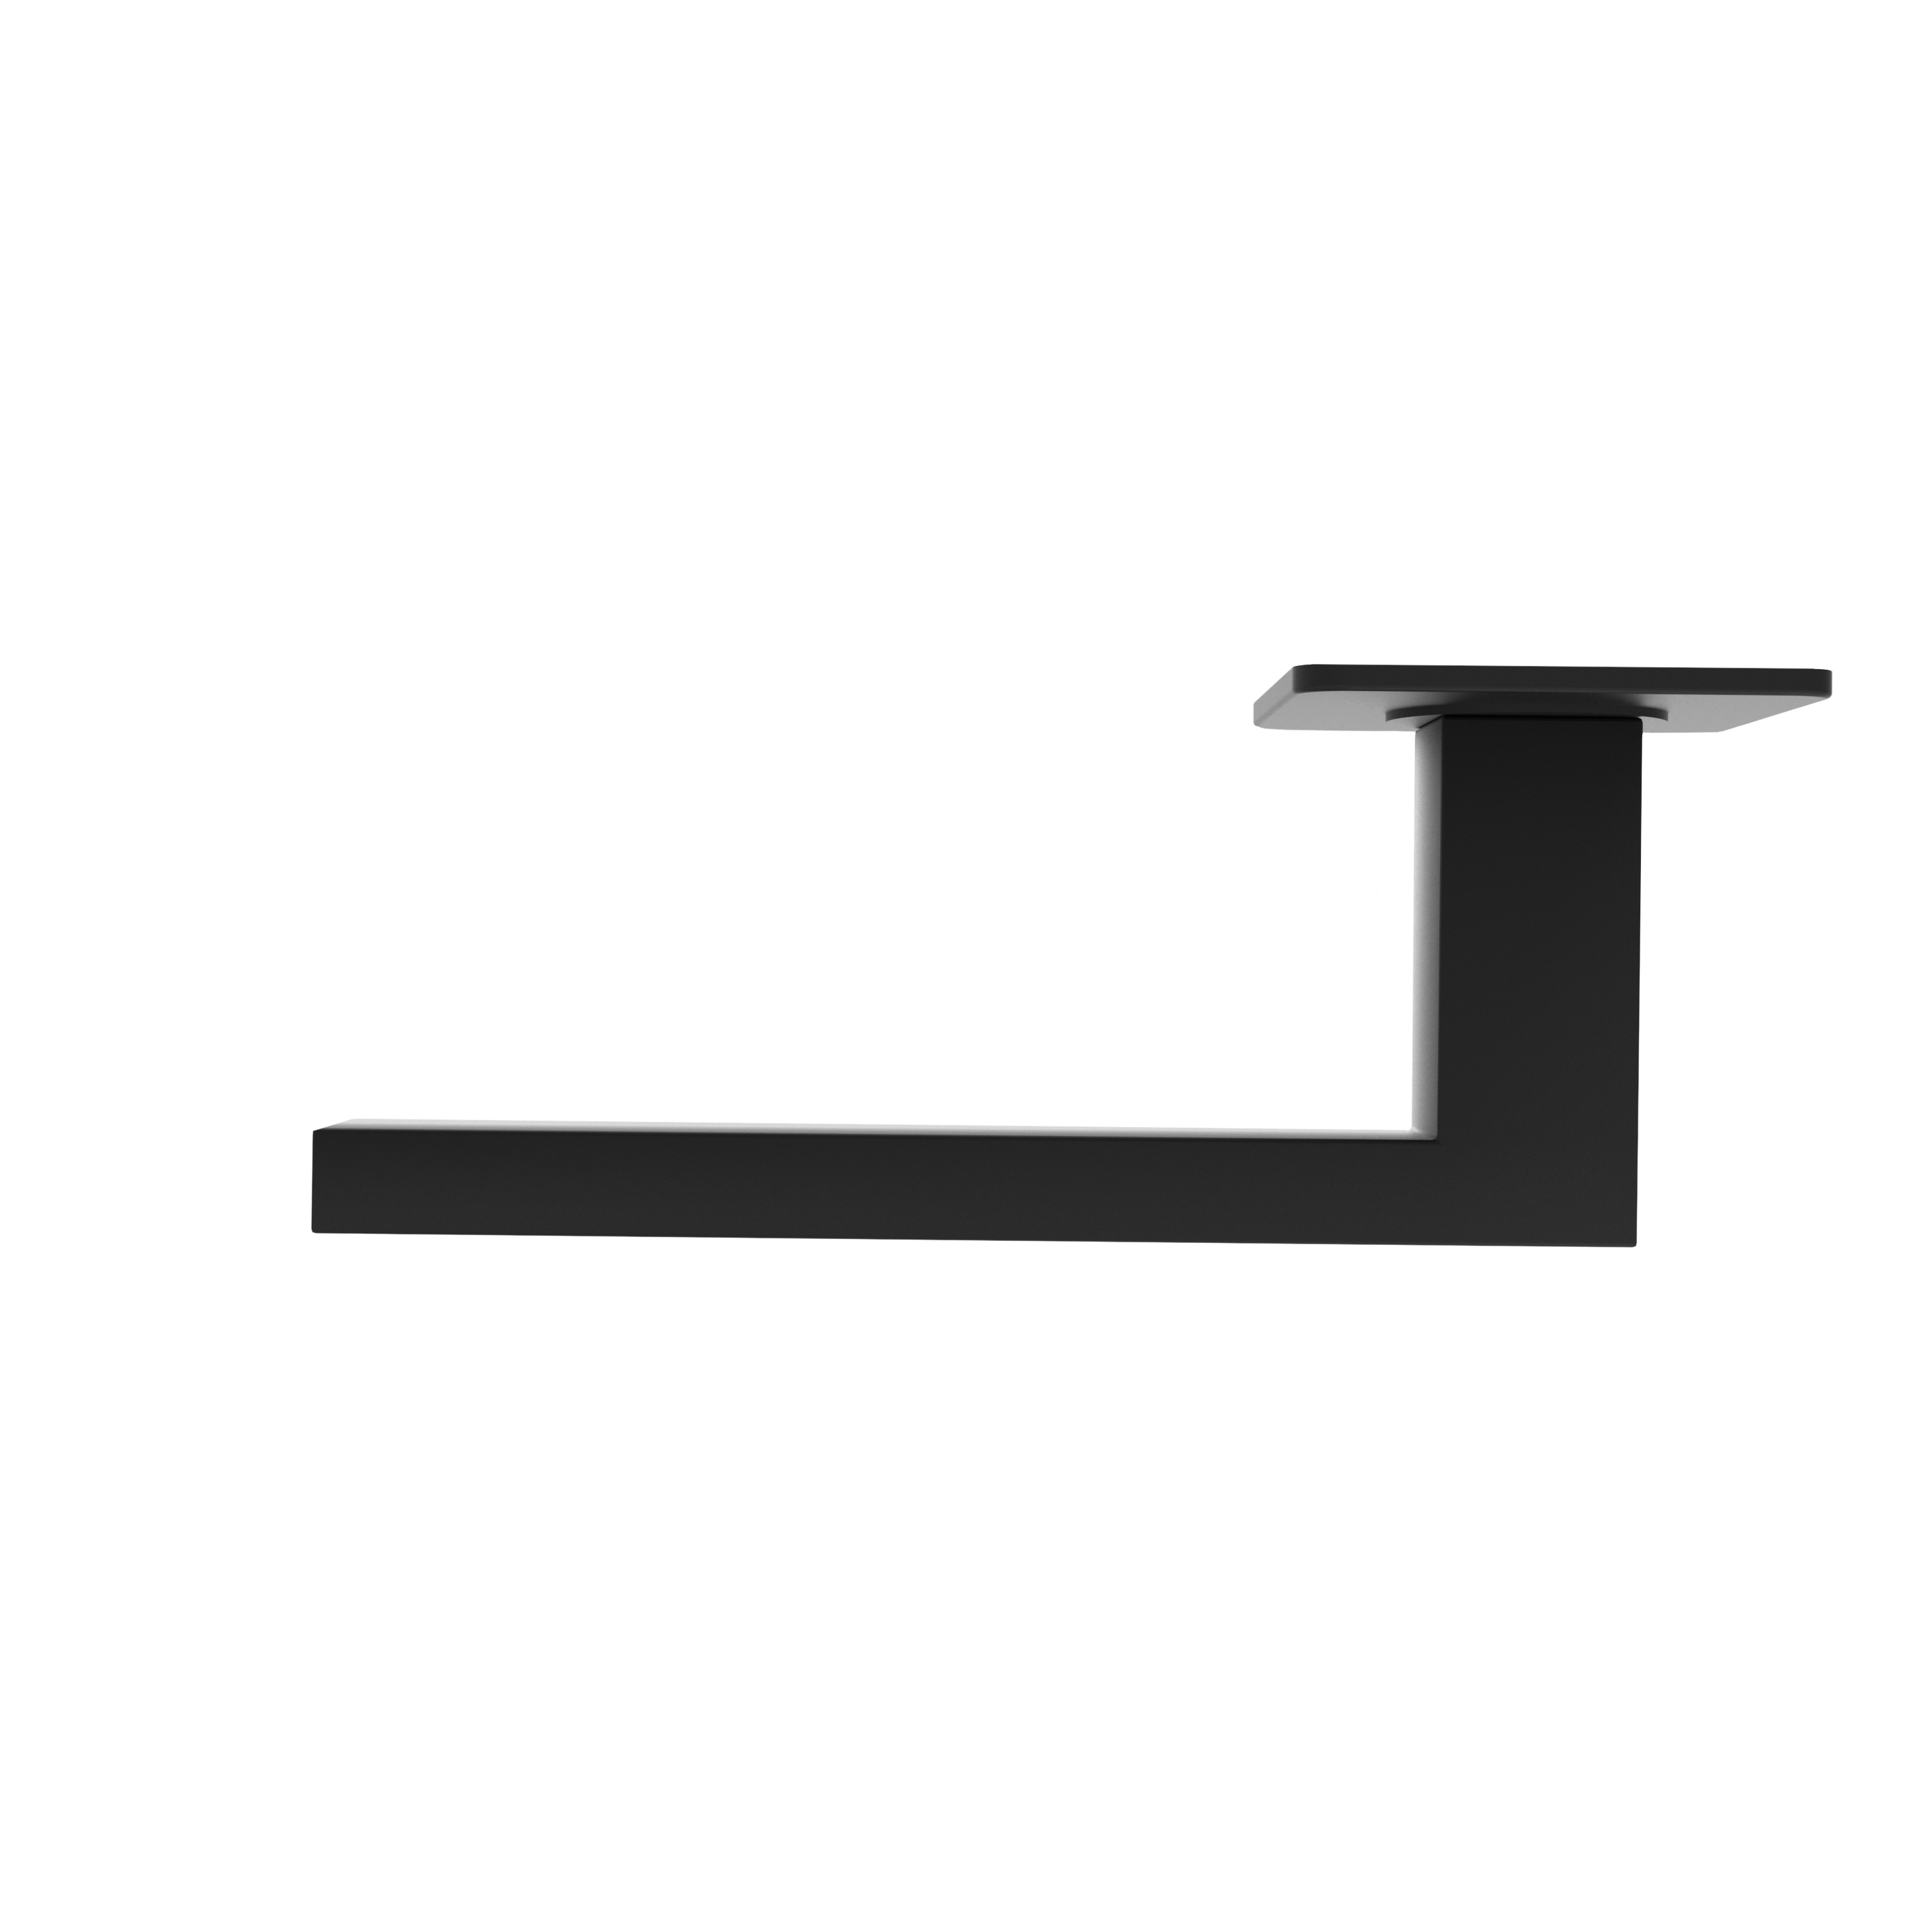 Türgriff mit Flachrosette eckig L- Form gerade Modell Rhovara Premium Mattschwarz Klipprosette flach Klasse 1